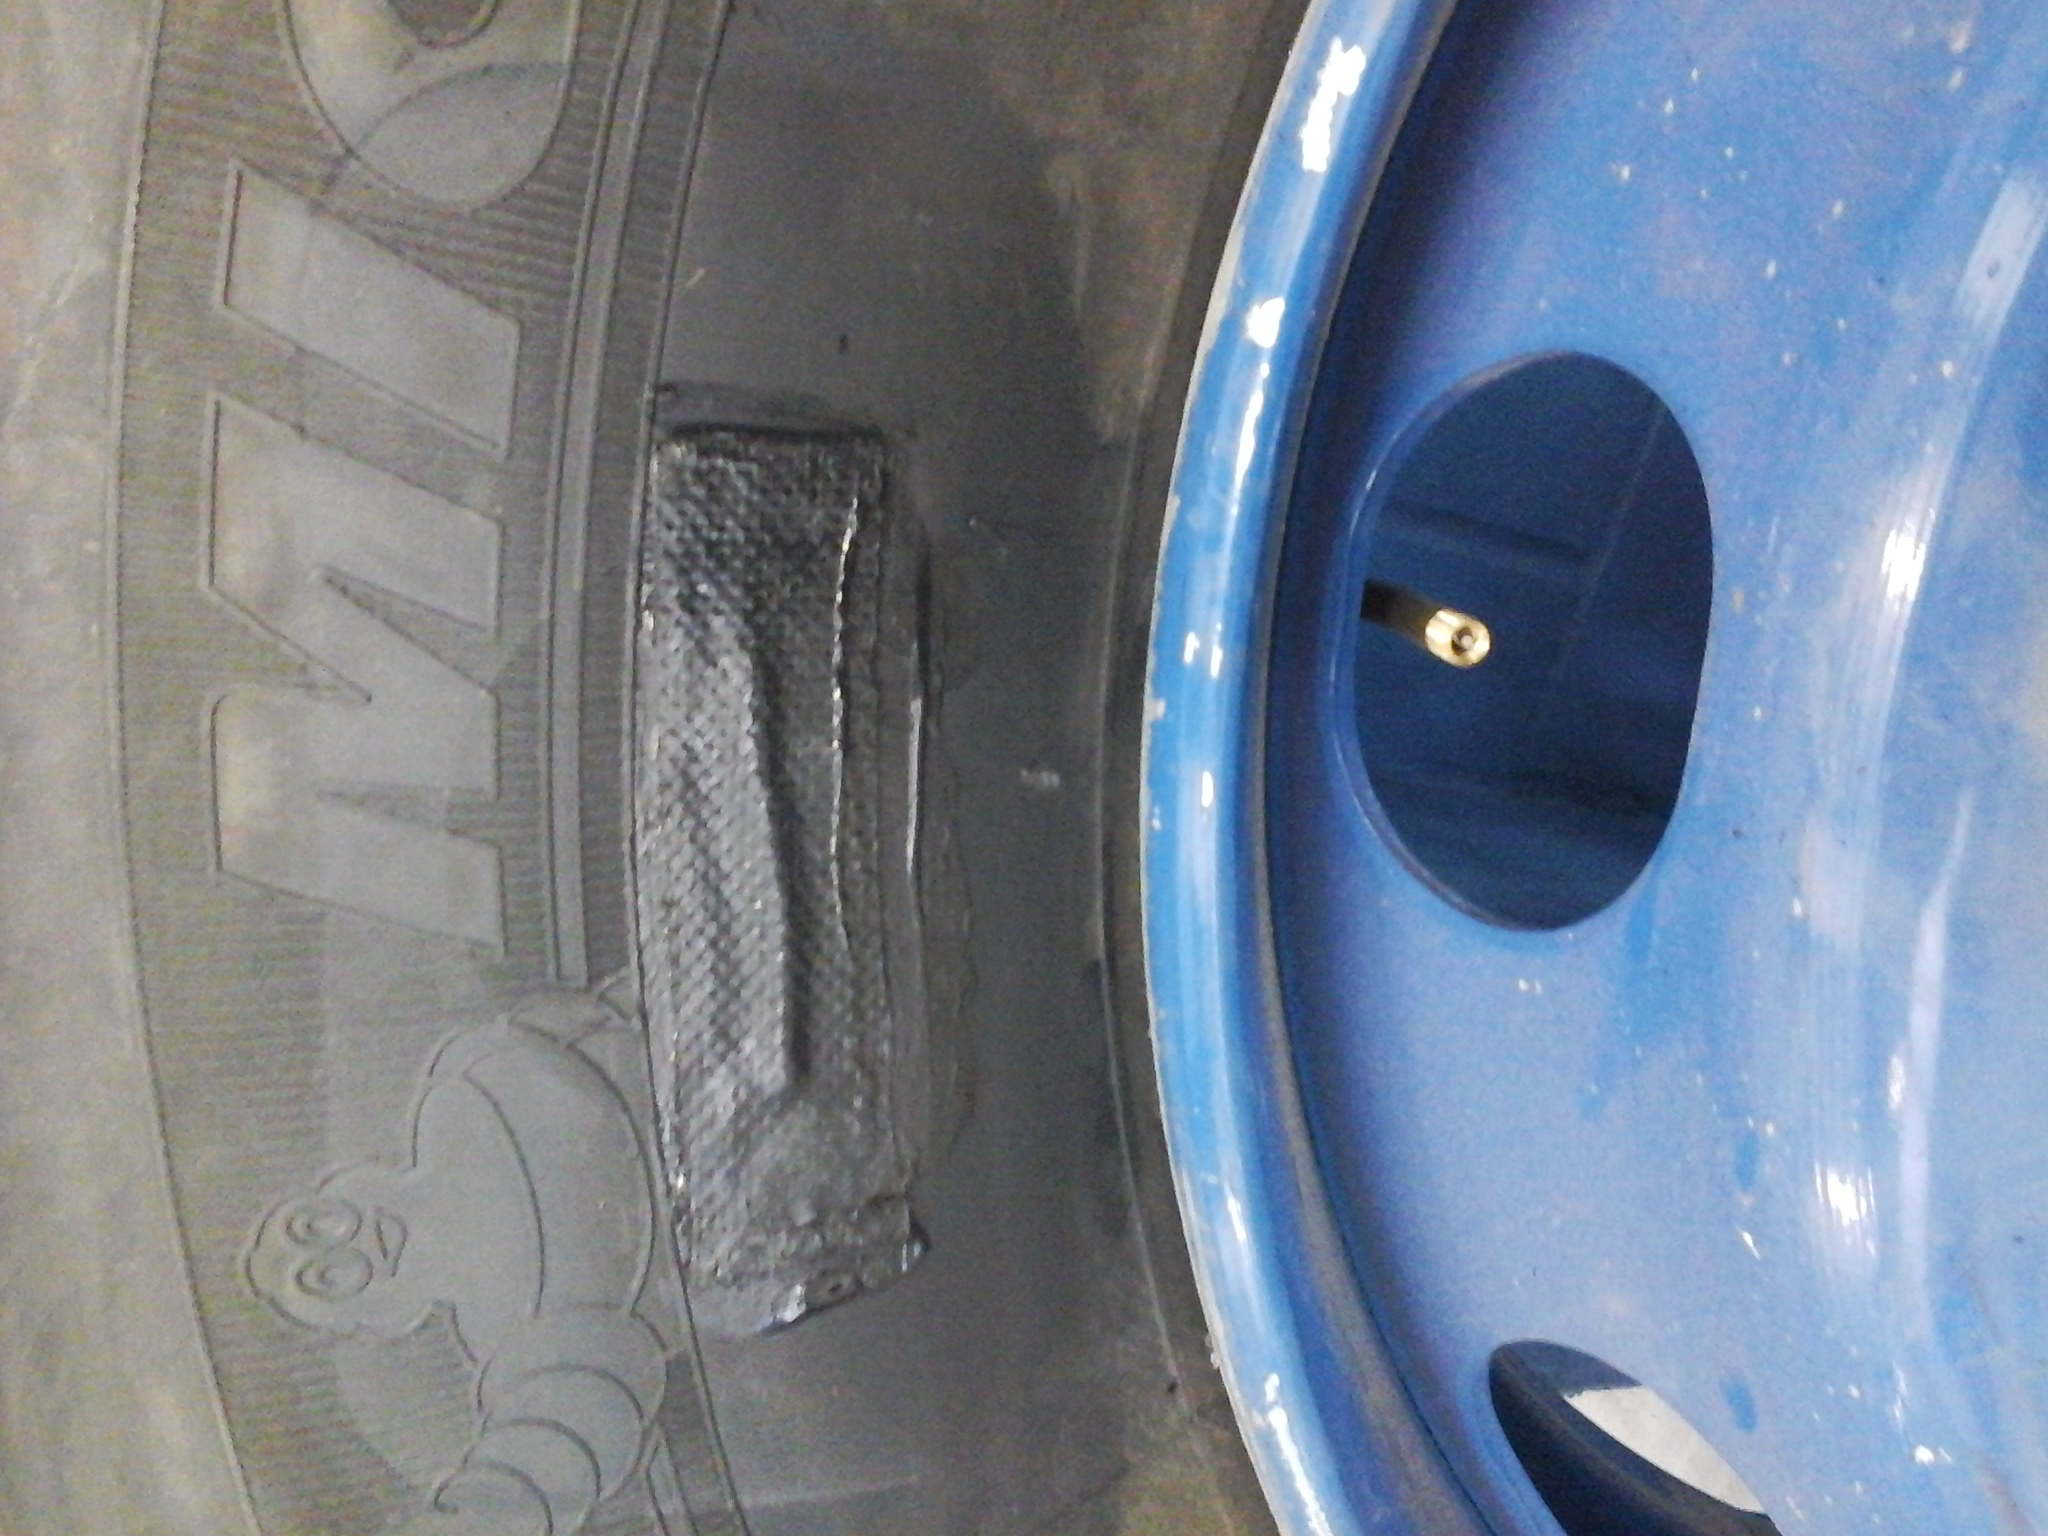 São vulcanizados os chips ATS de pneus com os pneus montados nos respectivos veículos.